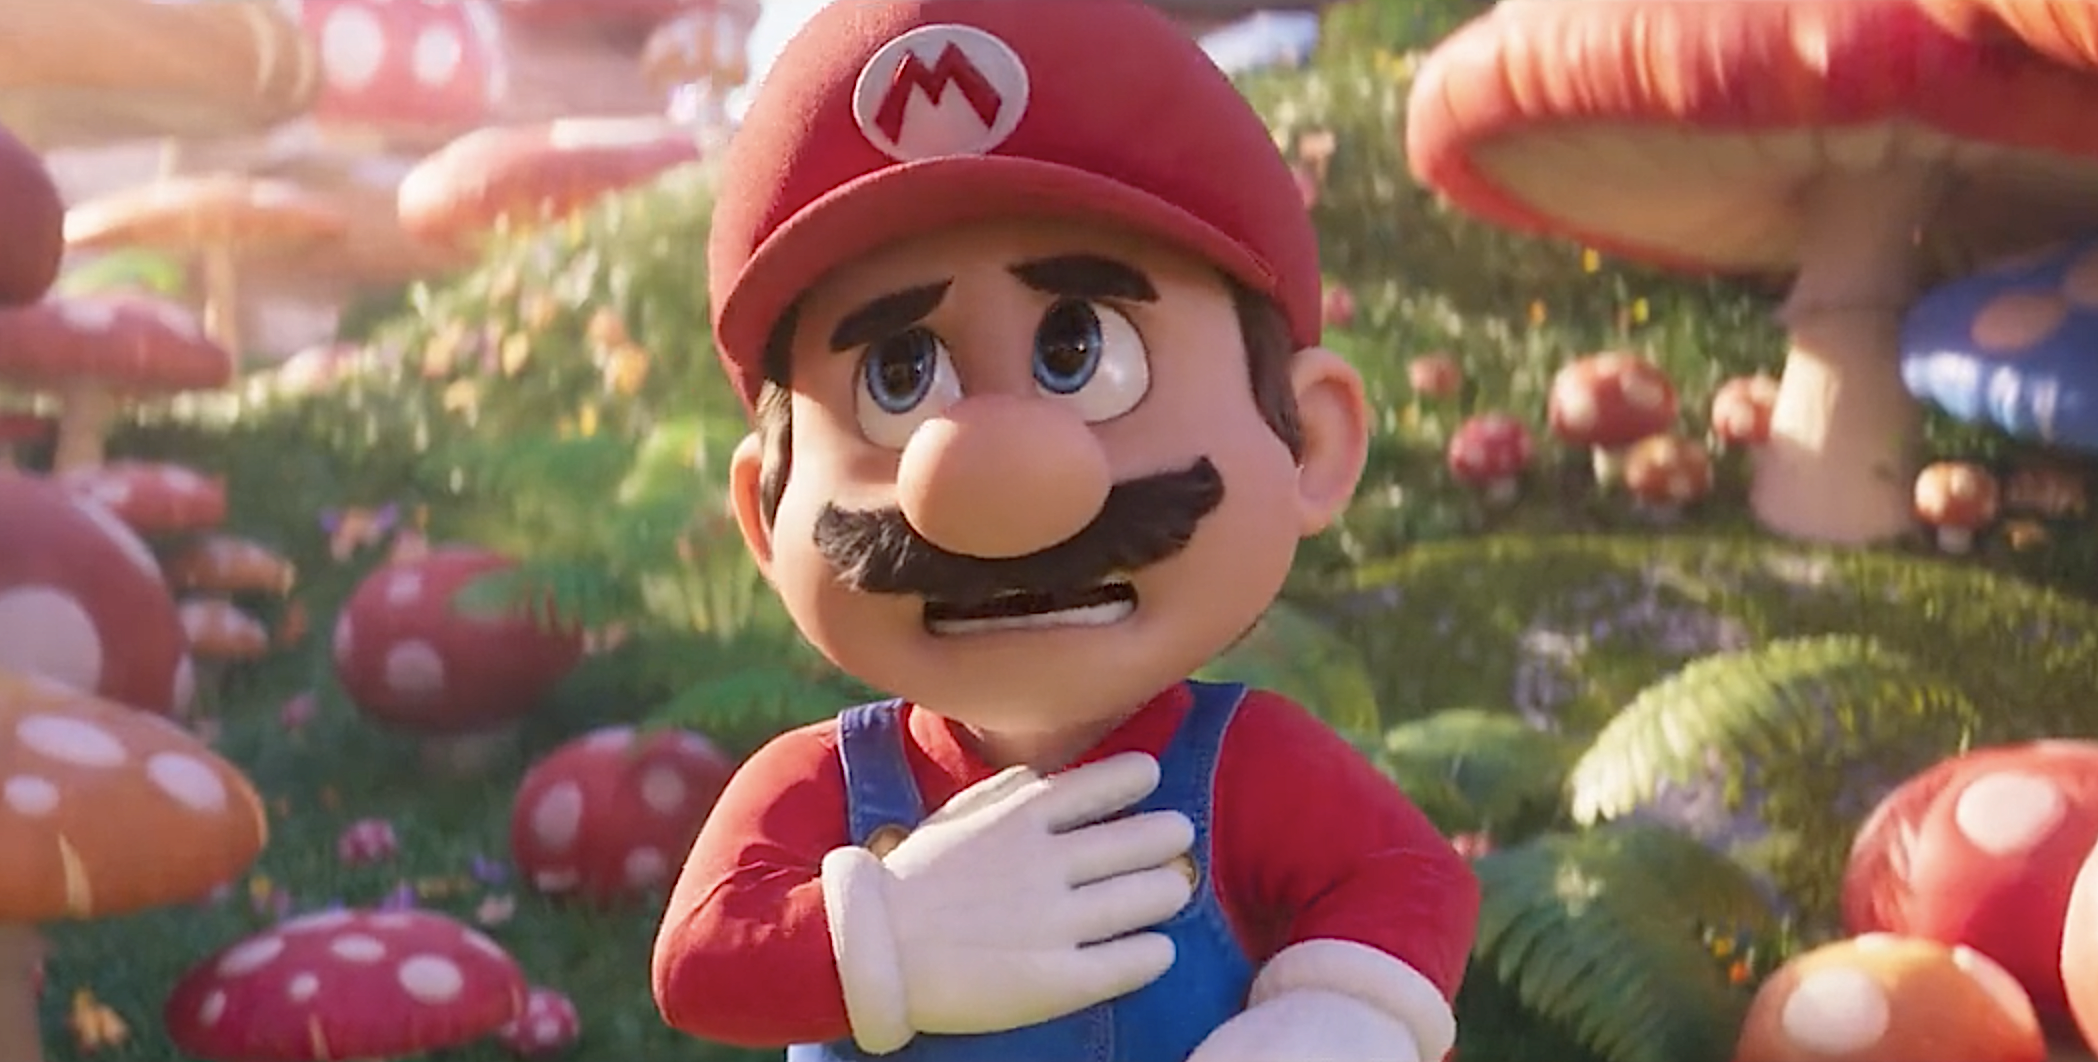 Poster Super Mario Bros O Filme E - Pop Arte Skins